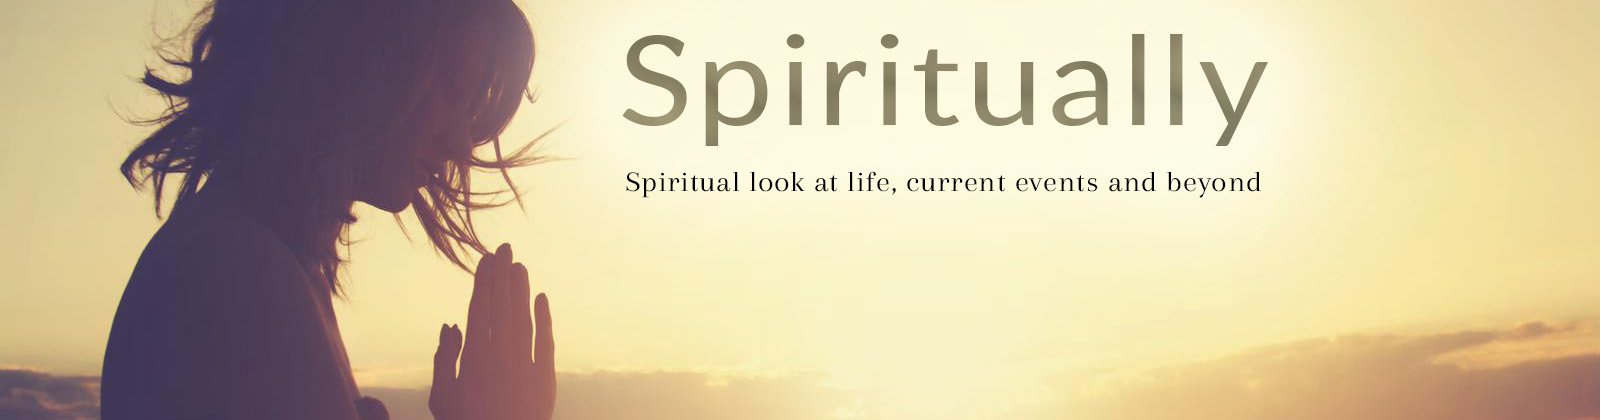 Spiritually